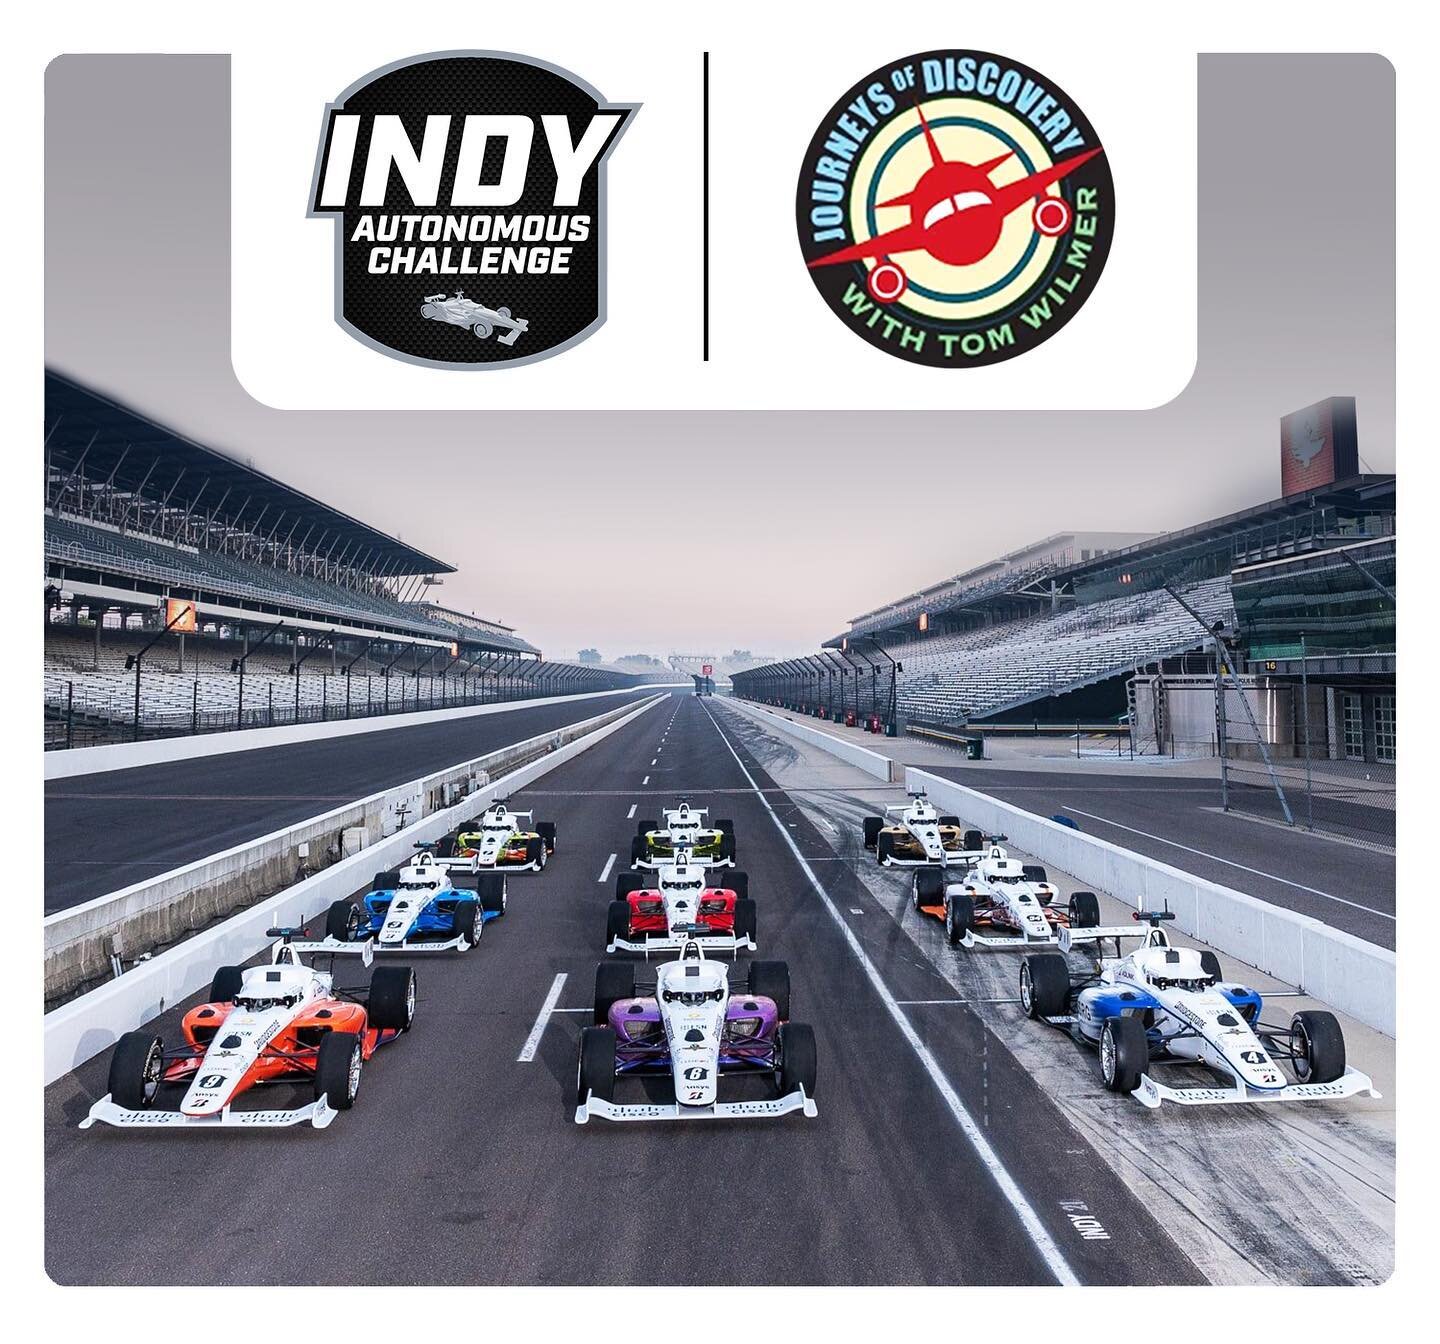 Indy Autonomous Challenge - Official Website